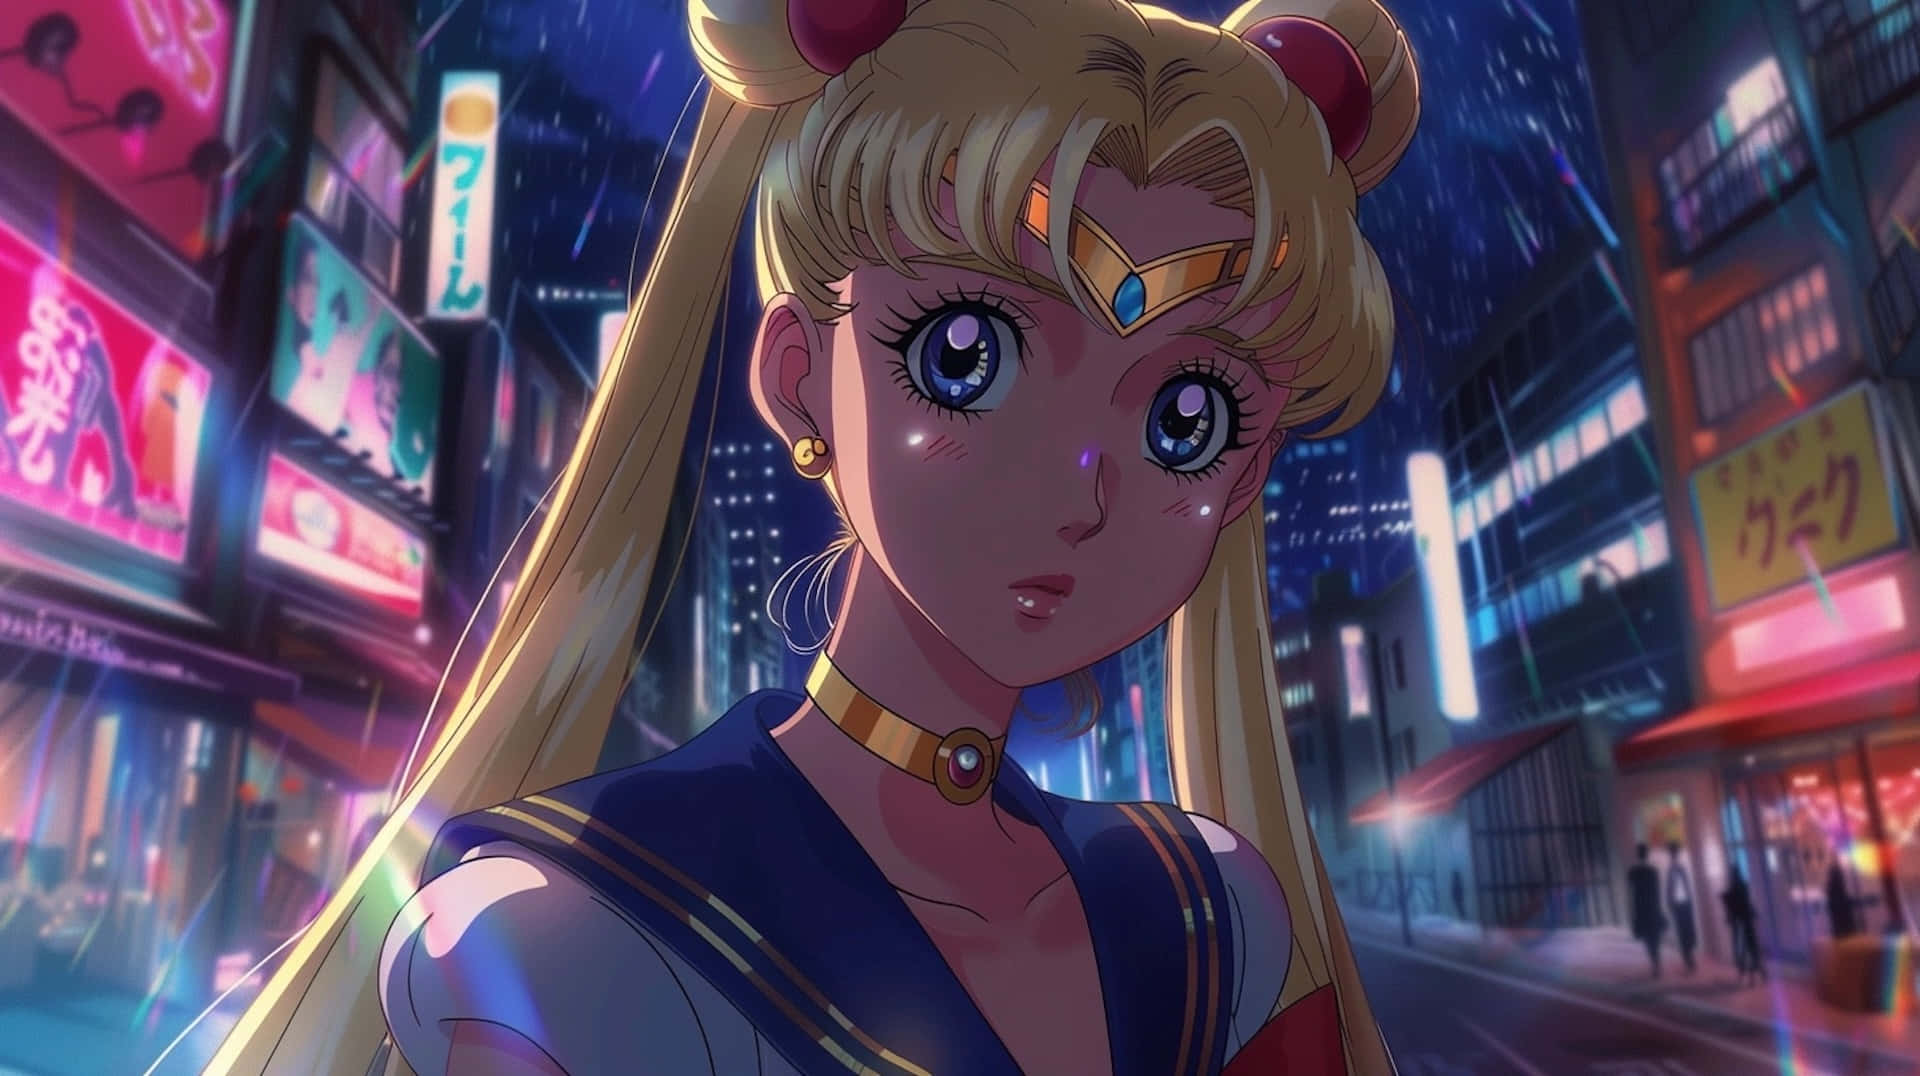 Sailor Moon Night Cityscape Wallpaper